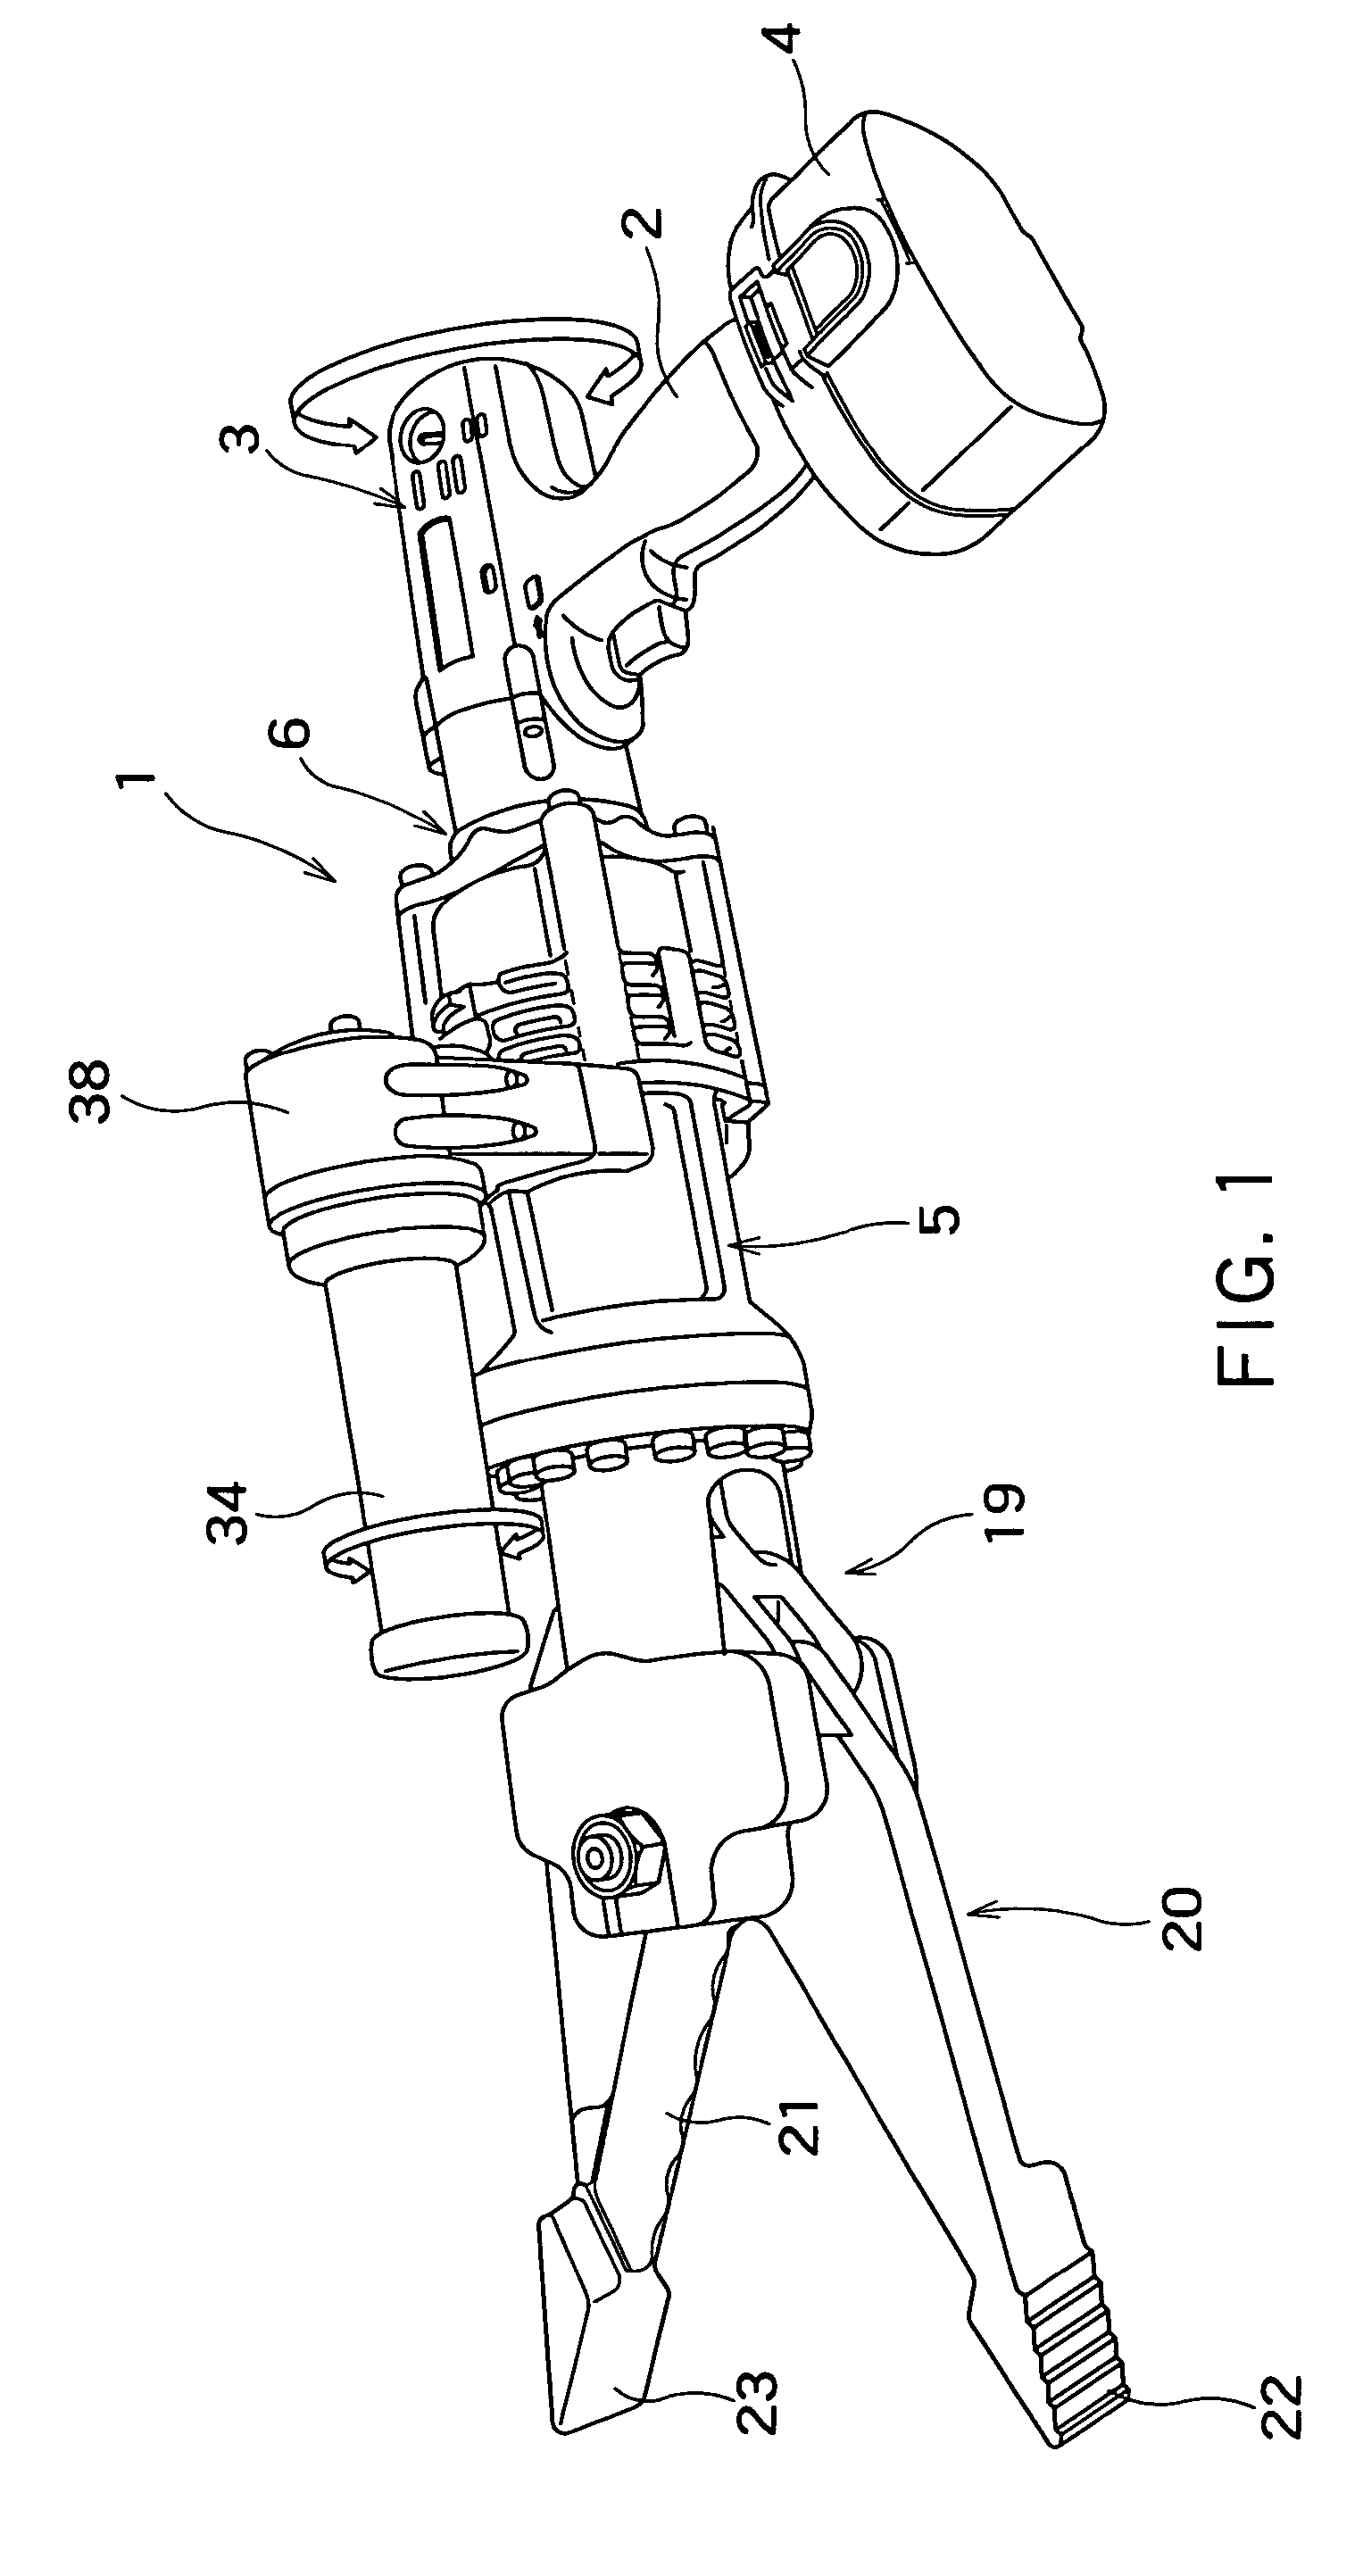 Hydraulic tool